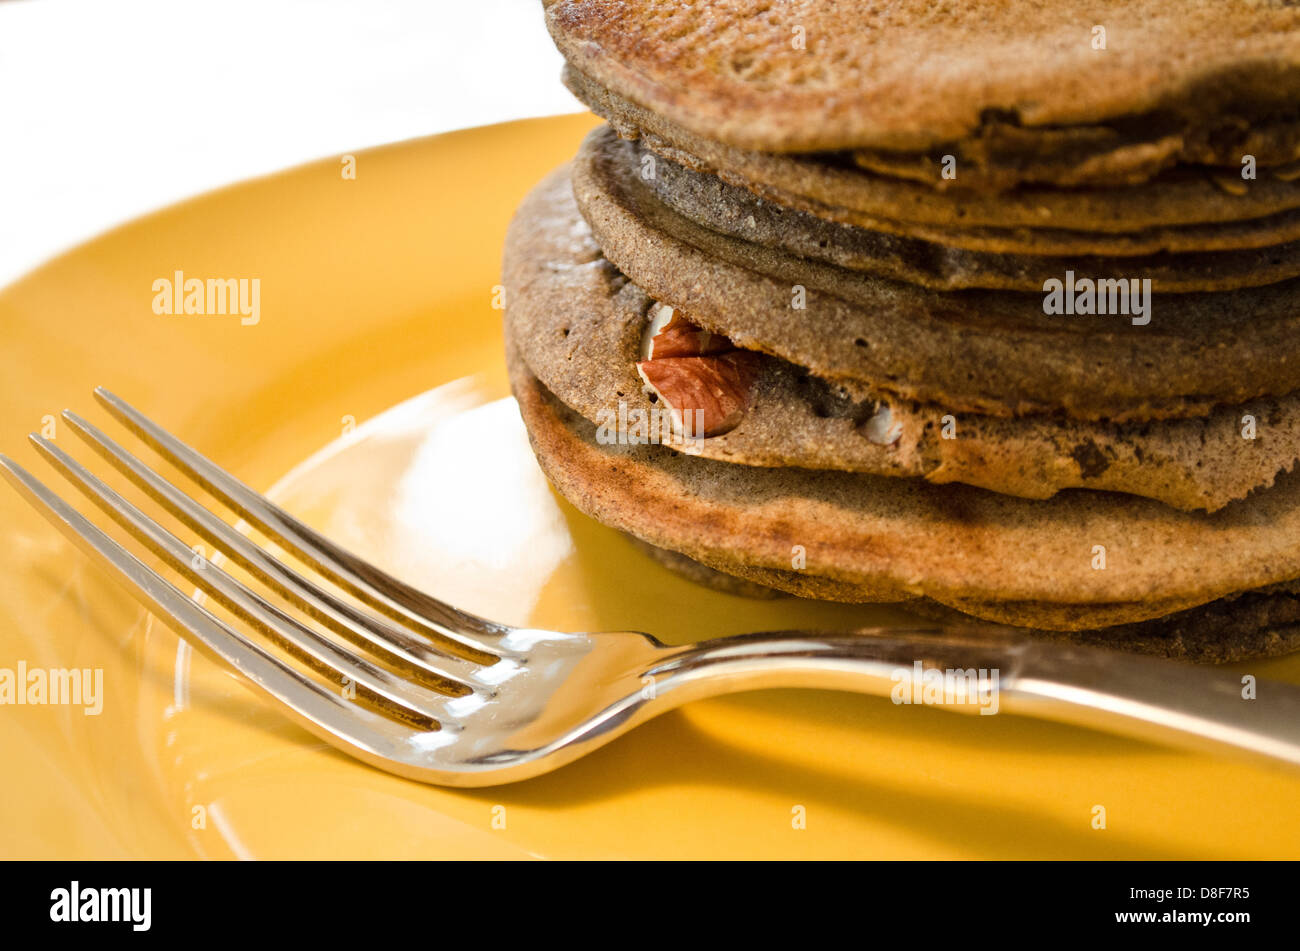 Stapel von Kürbis gewürzten Pekannüssen auf einem Teller zum Frühstück. Nahaufnahme von Flapjacks auf pflanzlicher Basis auf einer gelben Platte. Stockfoto